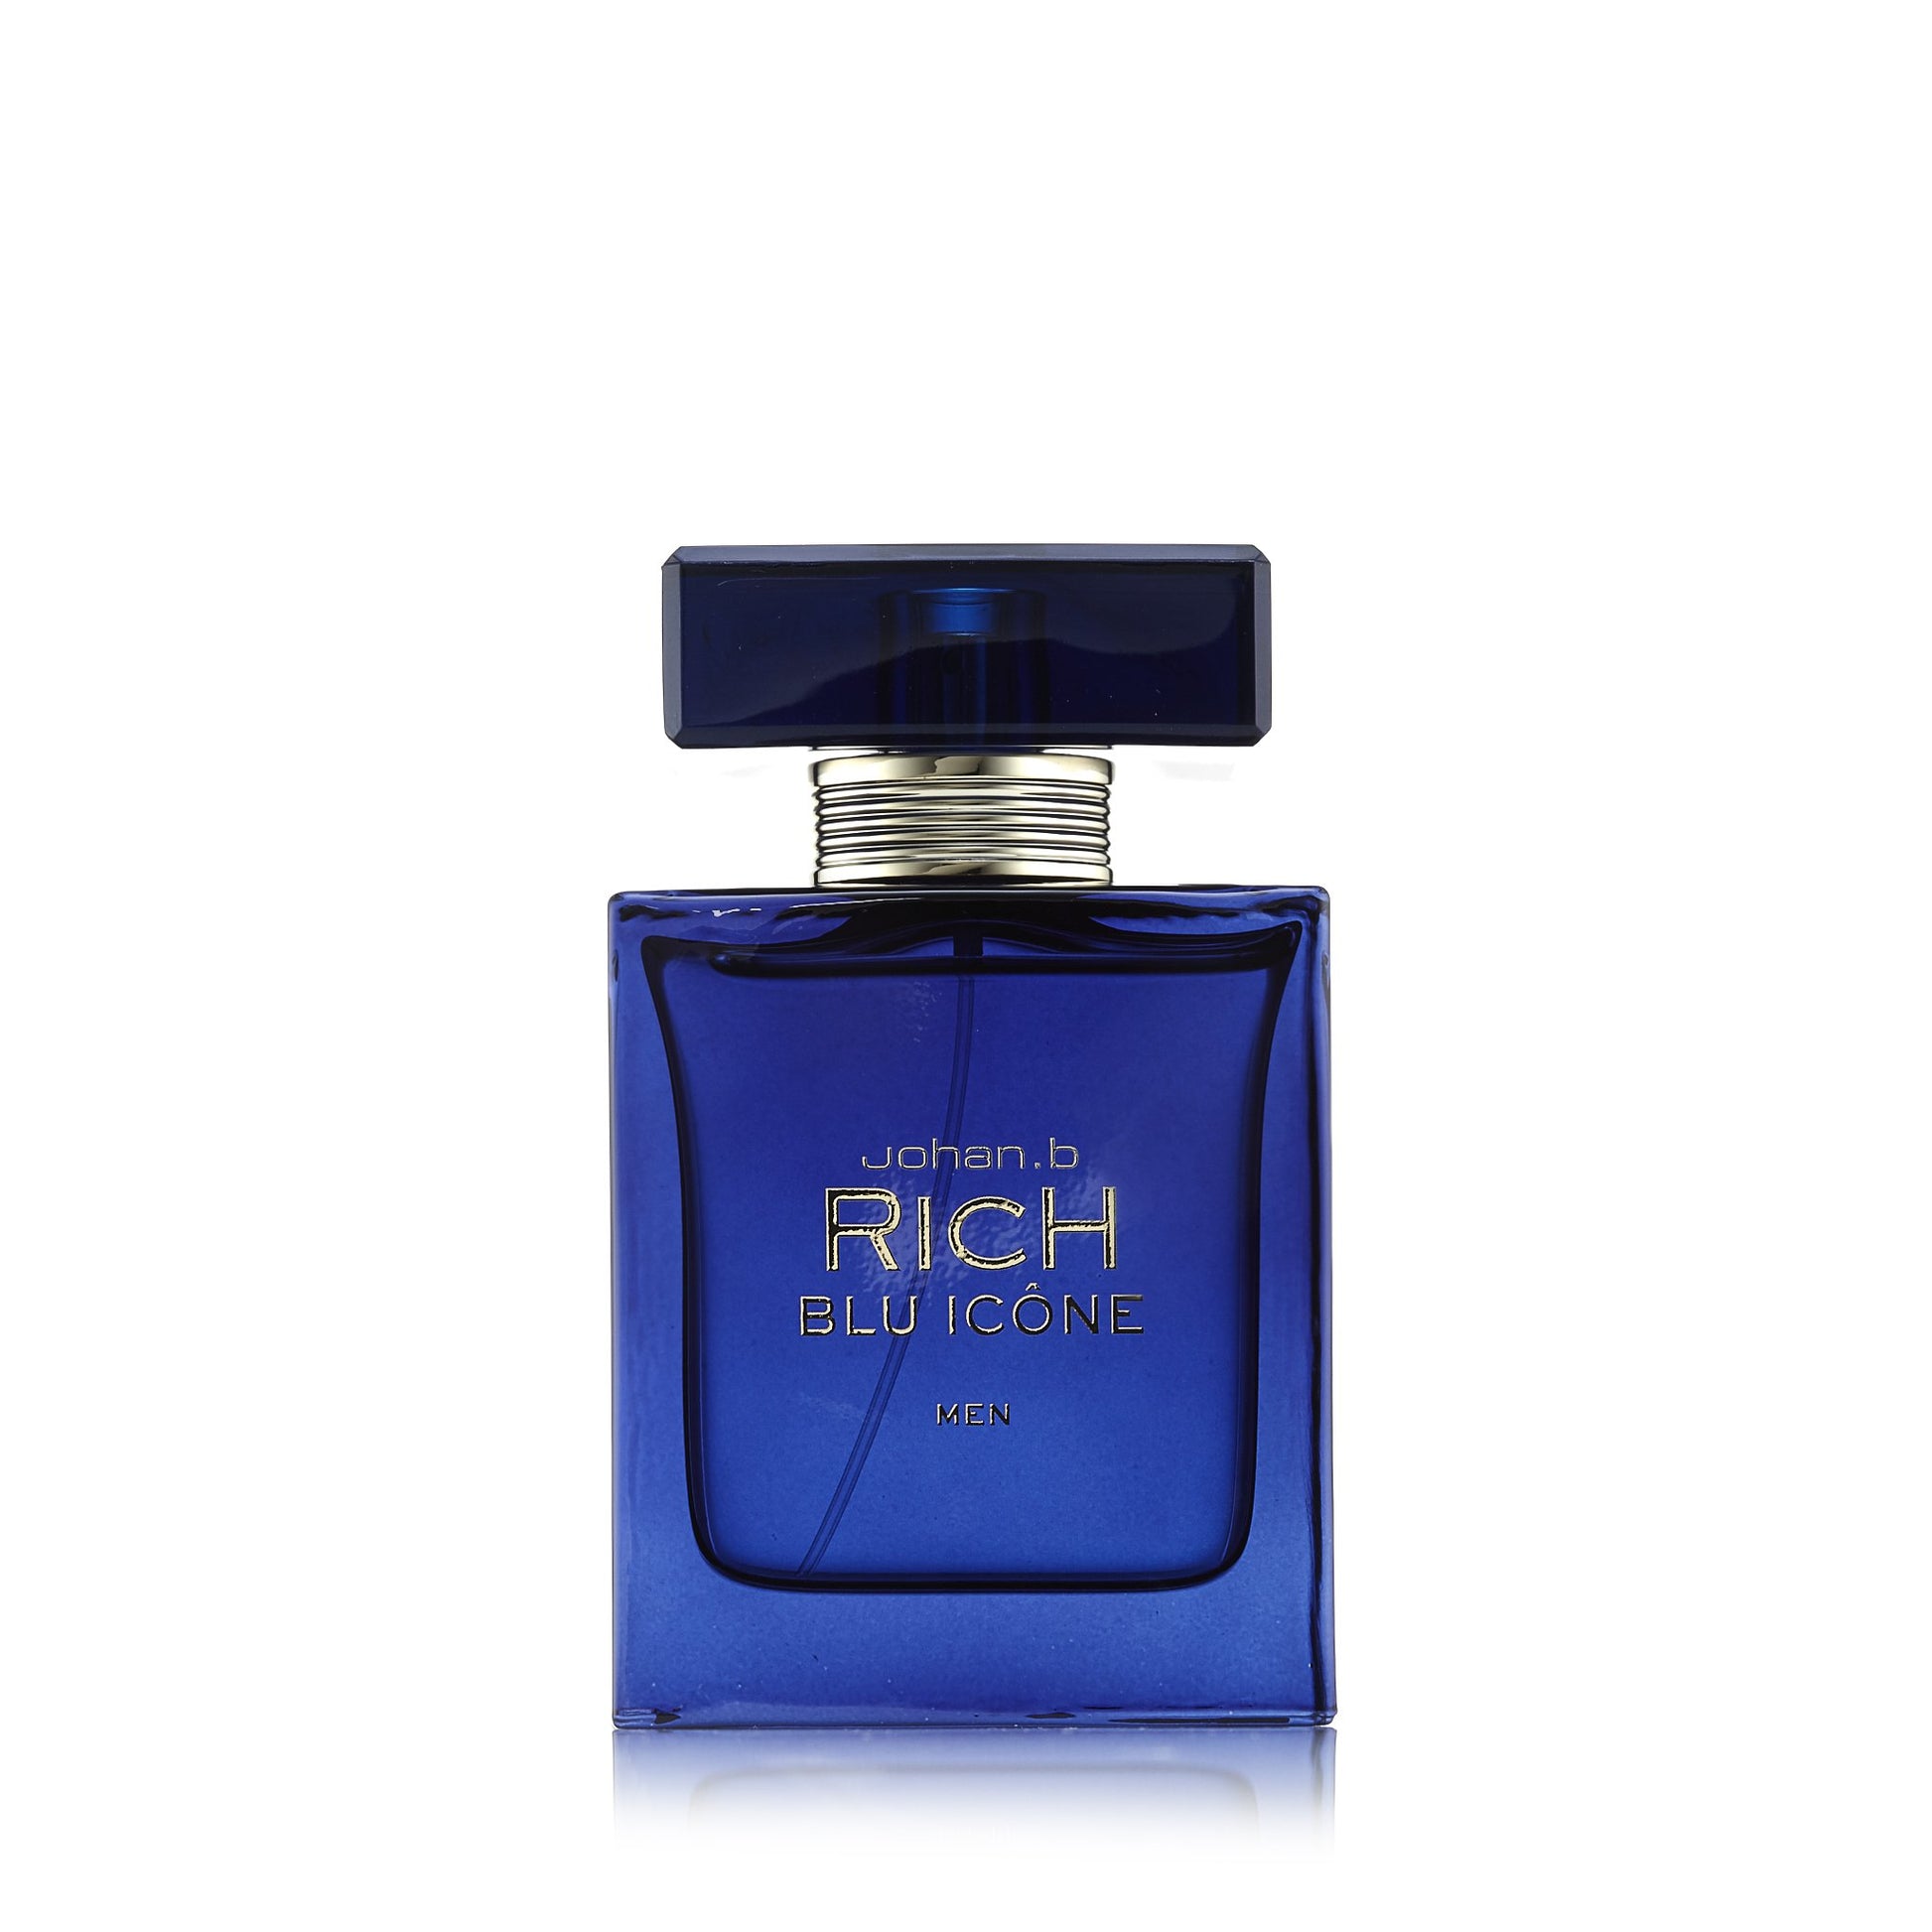 Rich Blu Icone Eau de Toilette Spray for Men, Product image 1